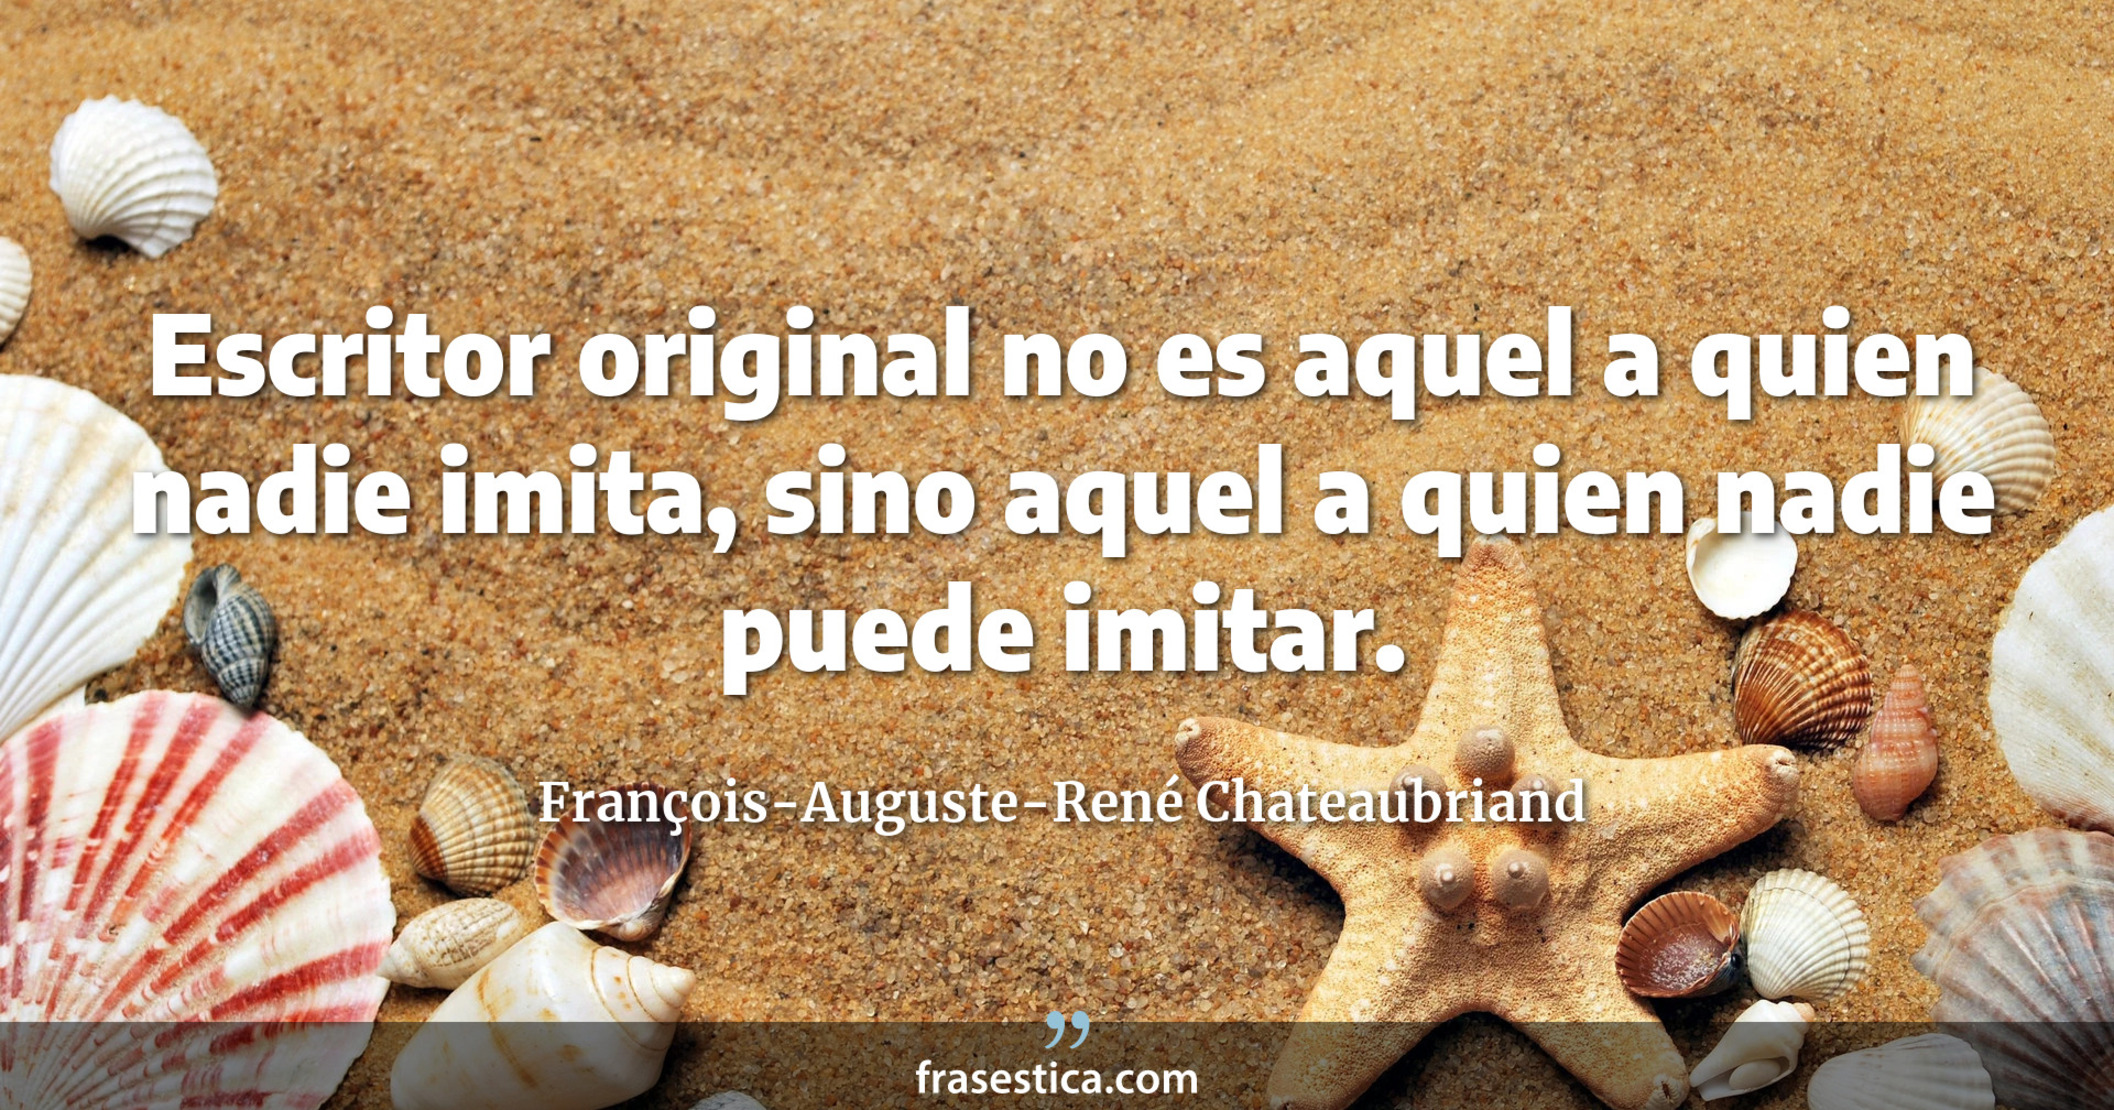 Escritor original no es aquel a quien nadie imita, sino aquel a quien nadie puede imitar. - François-Auguste-René Chateaubriand